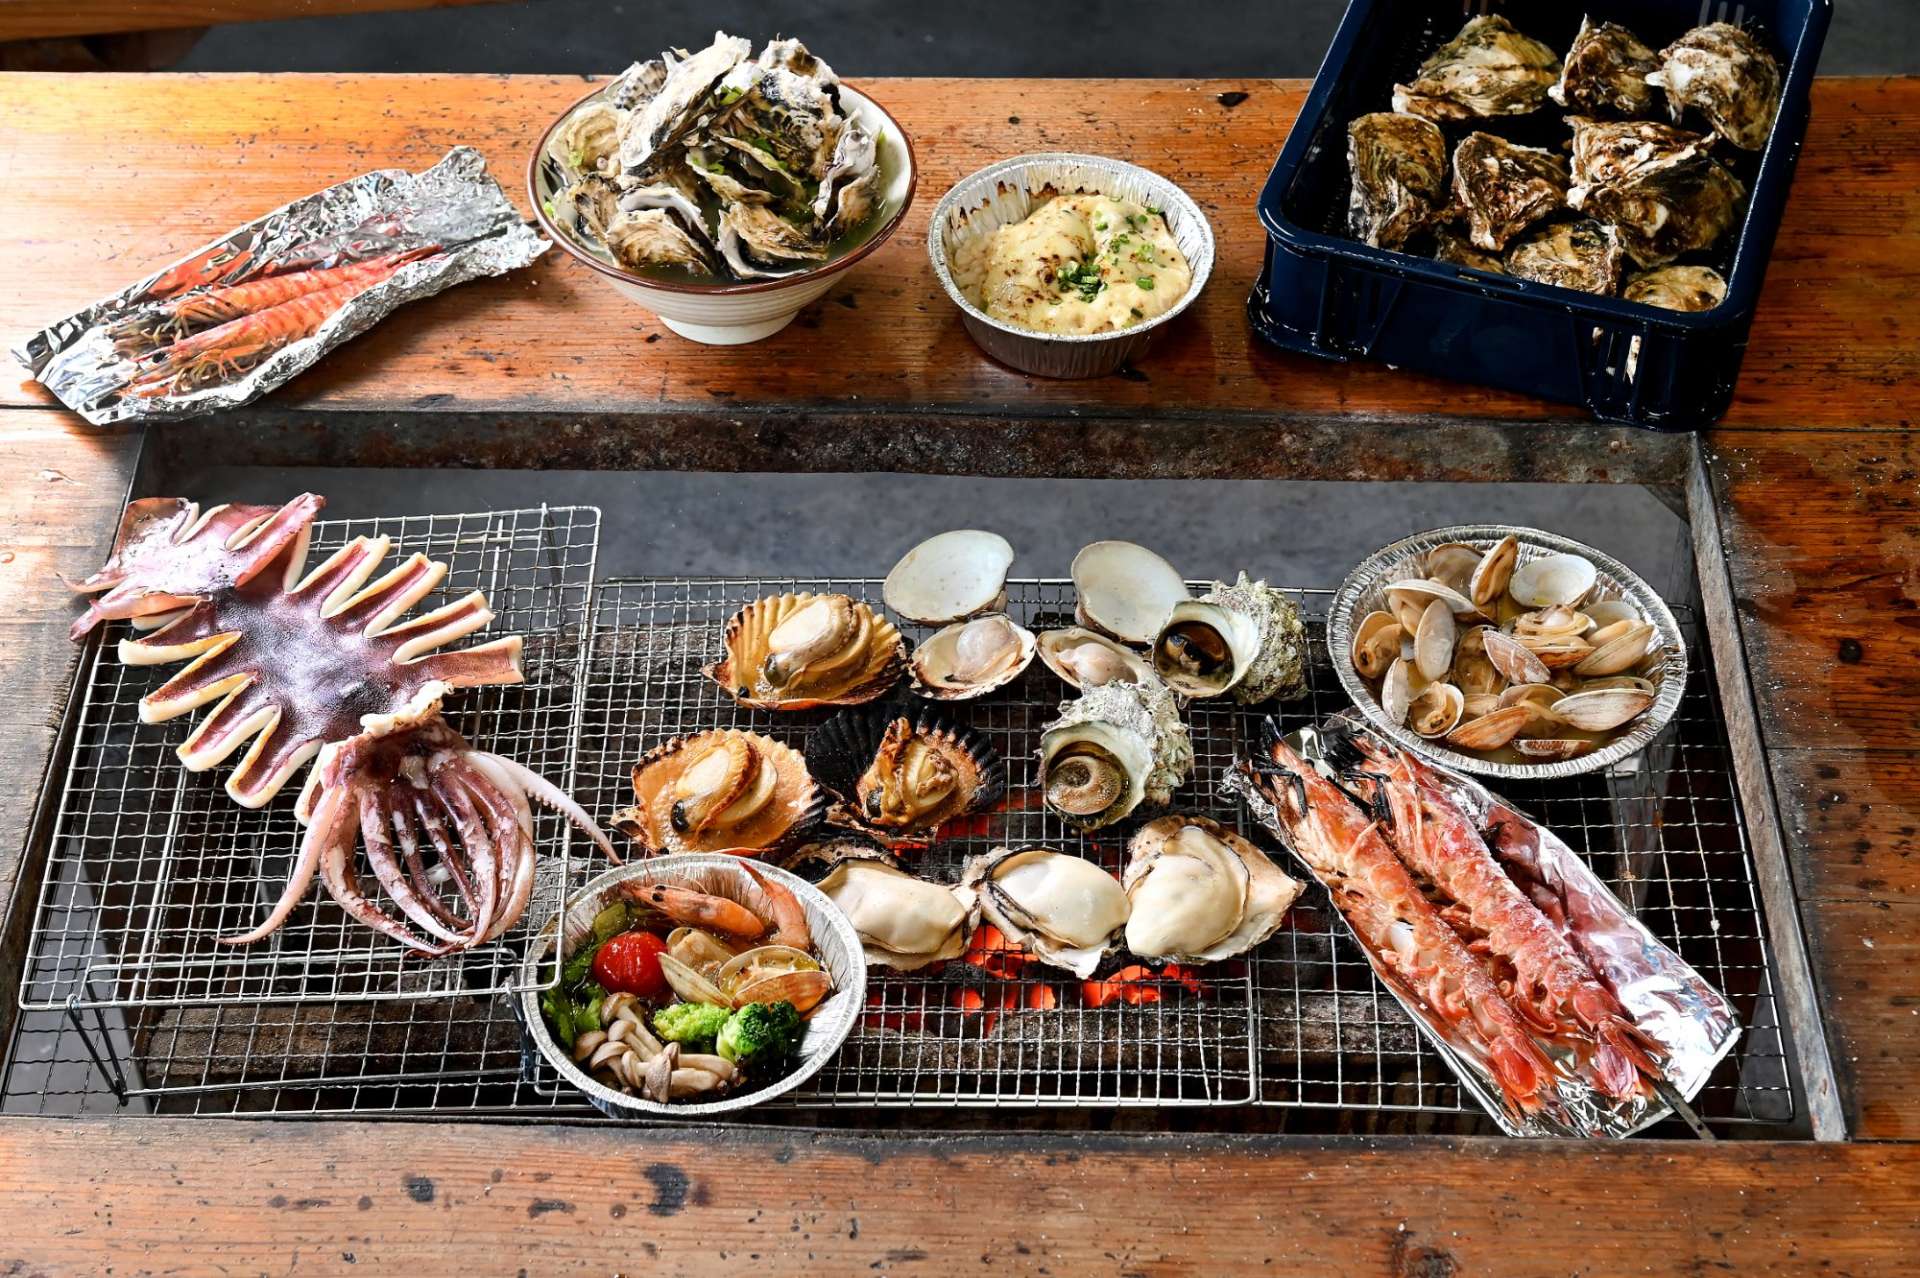 竹崎海産では牡蠣や竹崎カニなど色々な海産物やサイドメニューが楽しめます